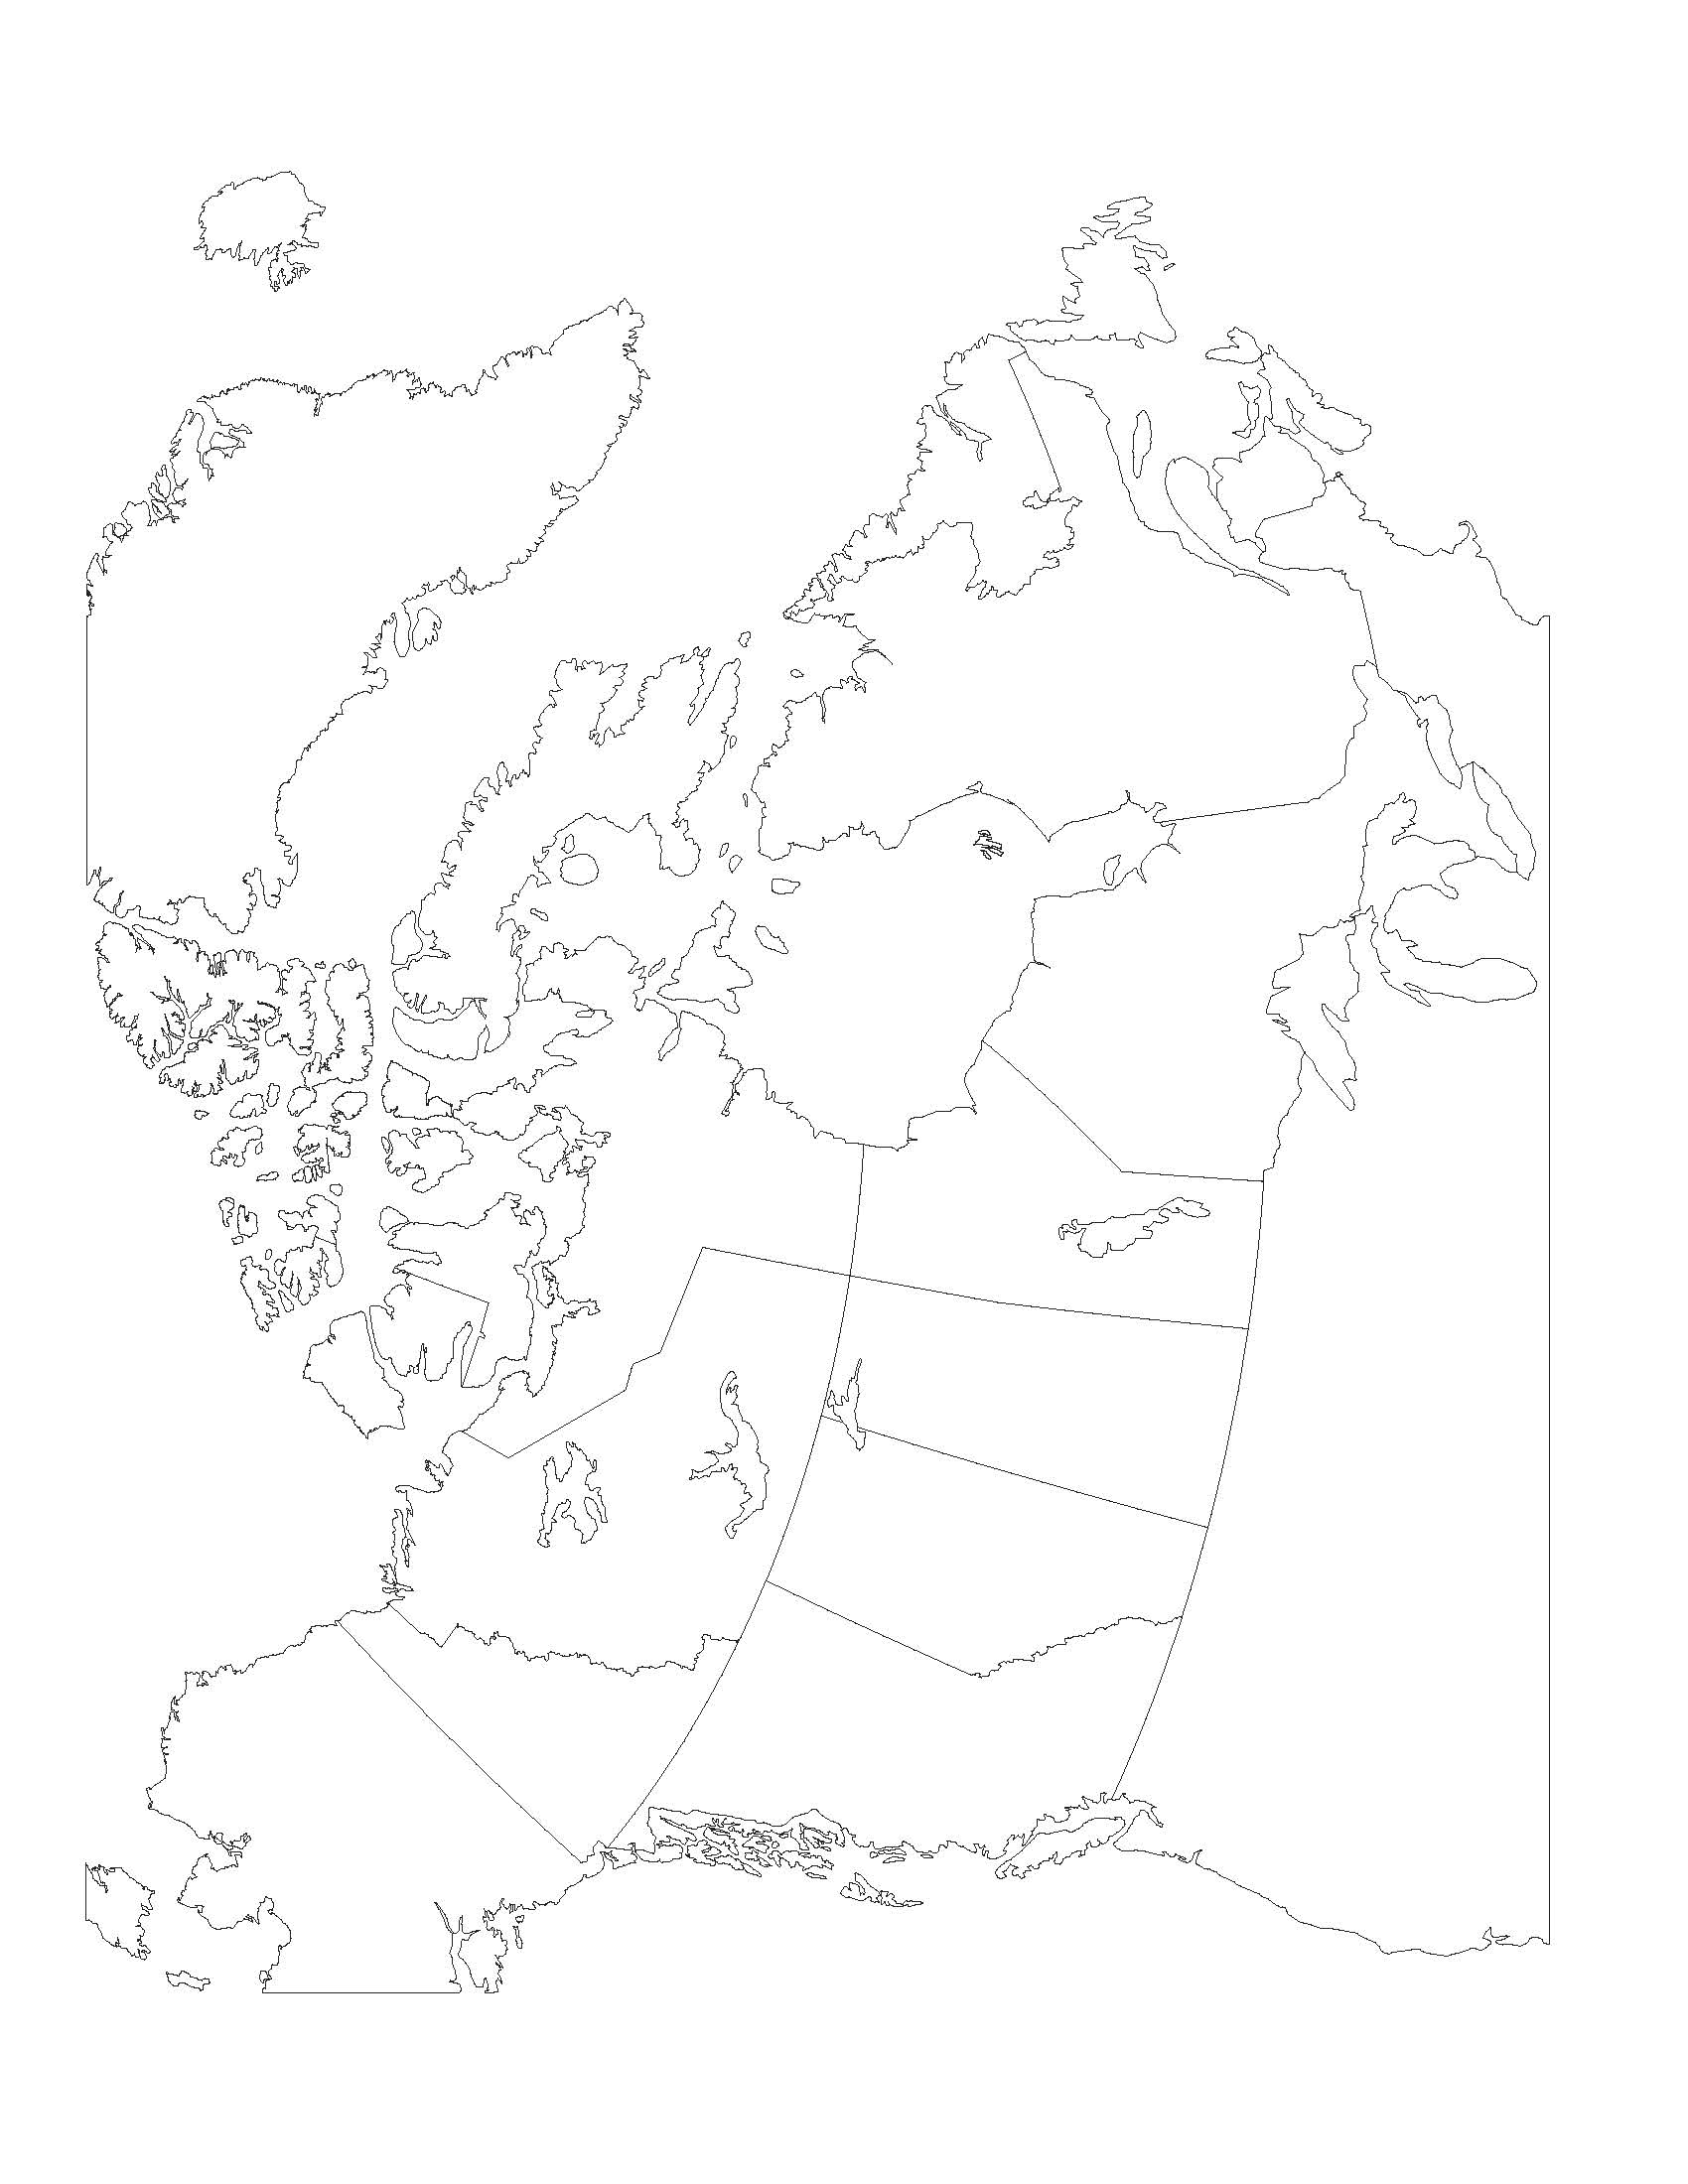 Canada carte vierge - Une carte muette du Canada (Amérique du Nord -  Amérique)